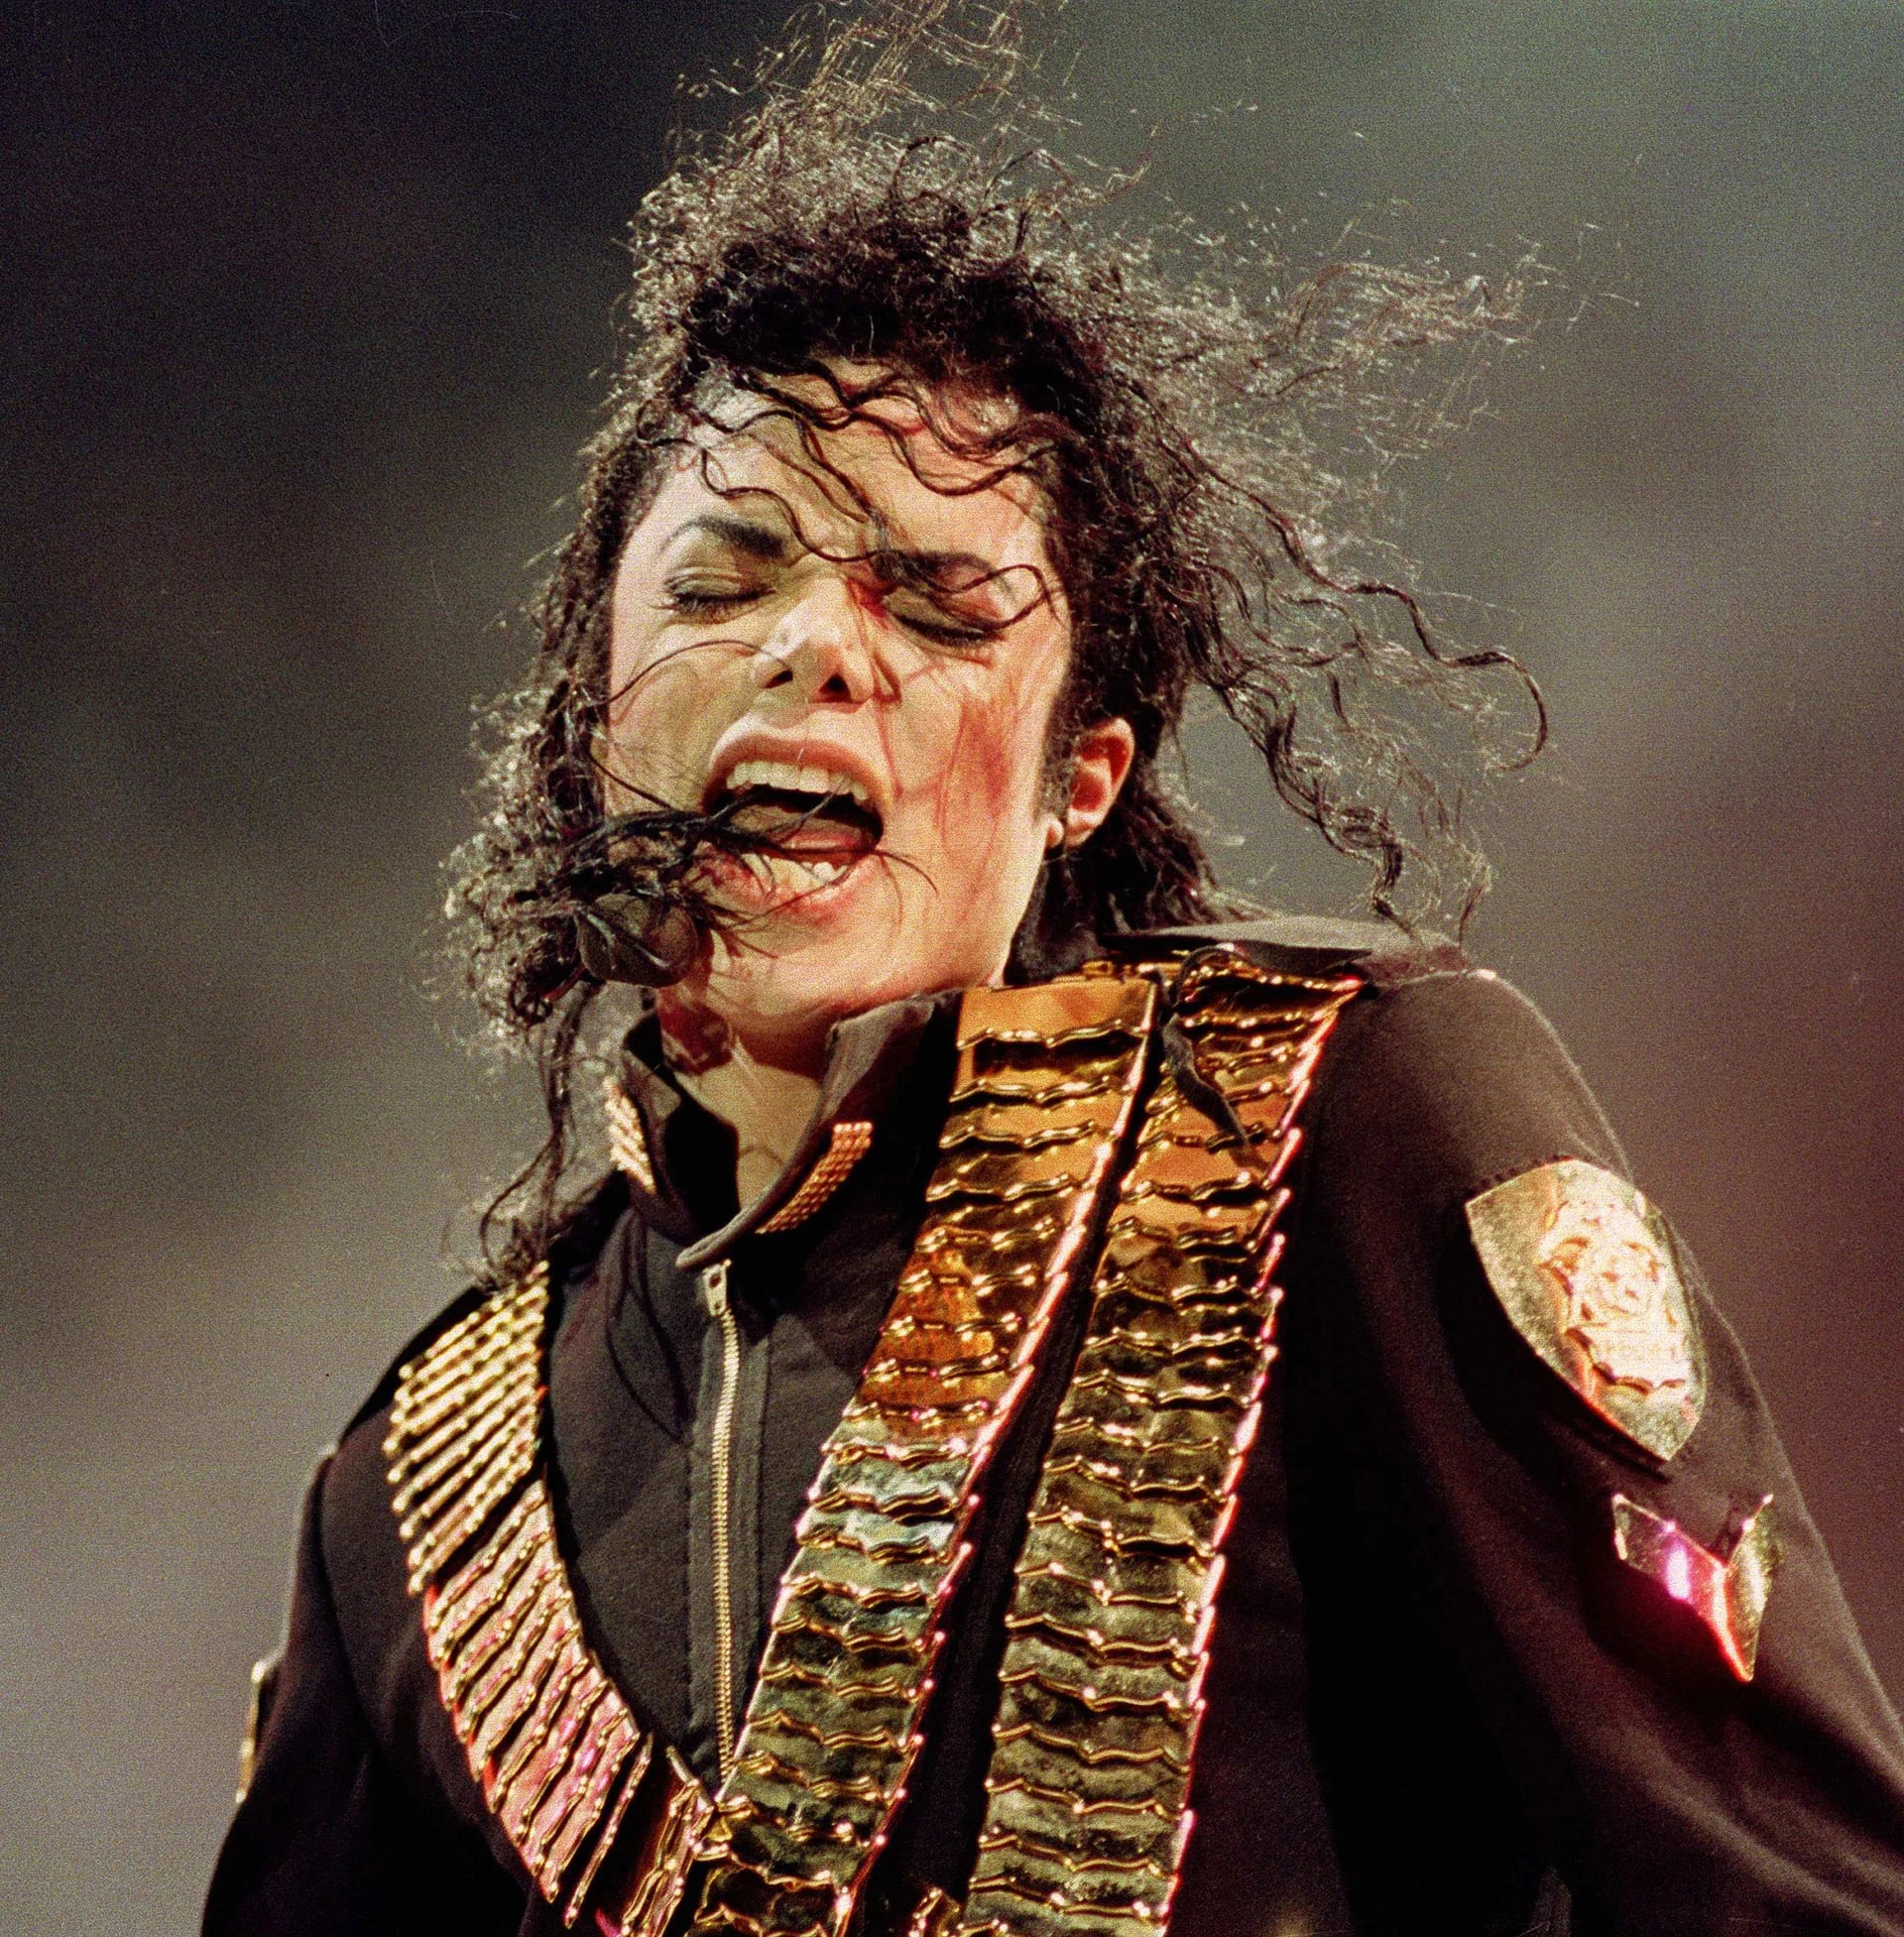 Michael Jackson cantando “Dangerous” en su recital en el National Stadium, Singapore (Agosto de 1993)